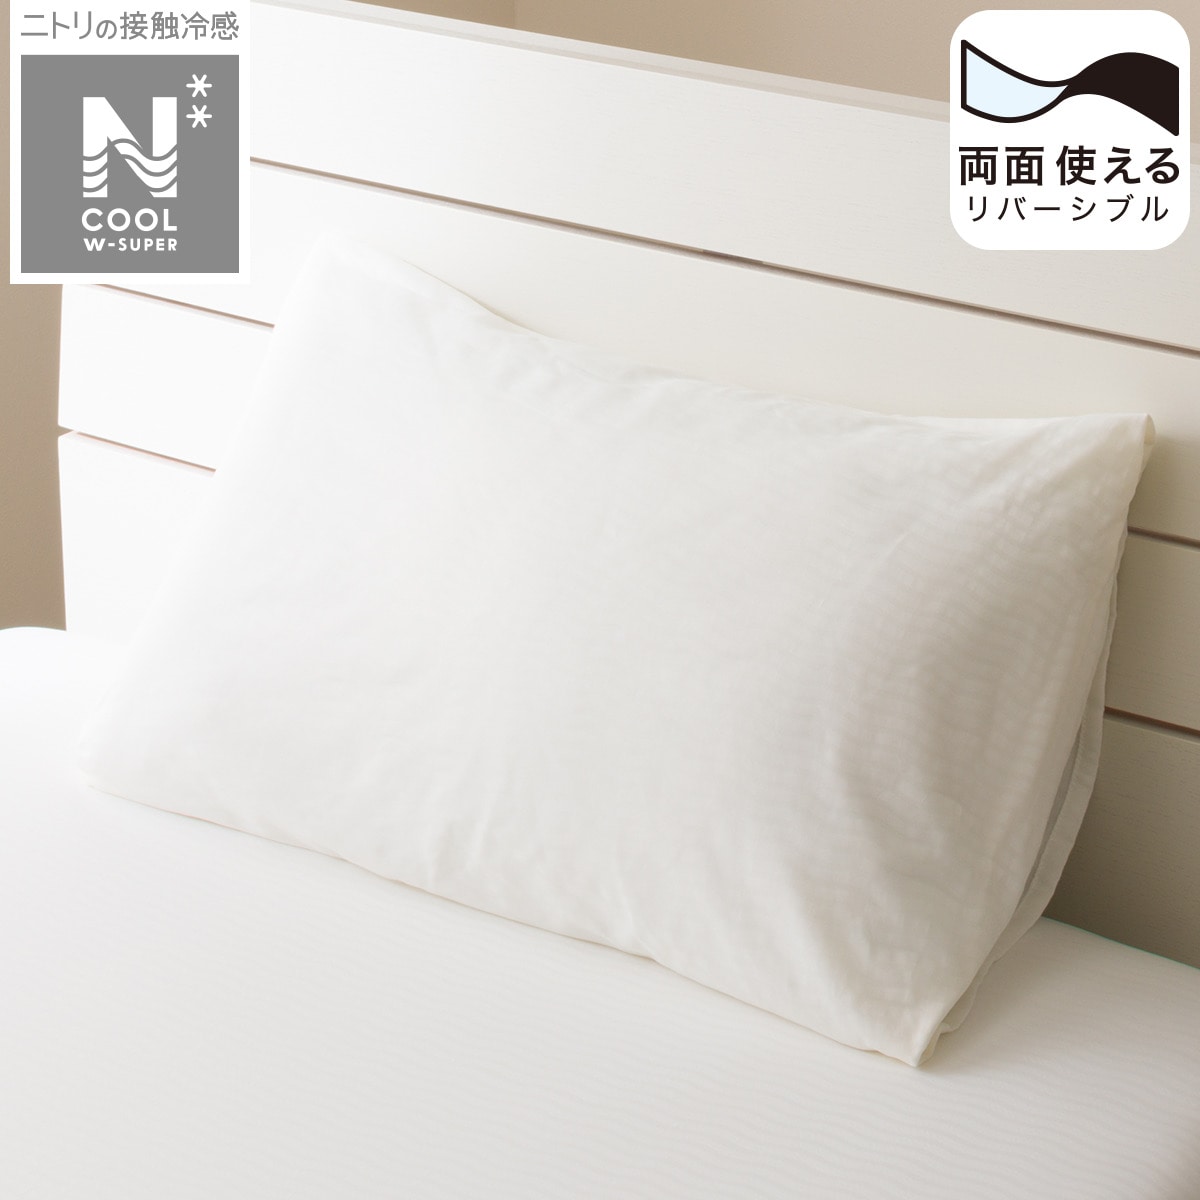 ニトリの枕カバー(NクールWSP WH 23NC-21)   【1年保証】(布団・寝具)